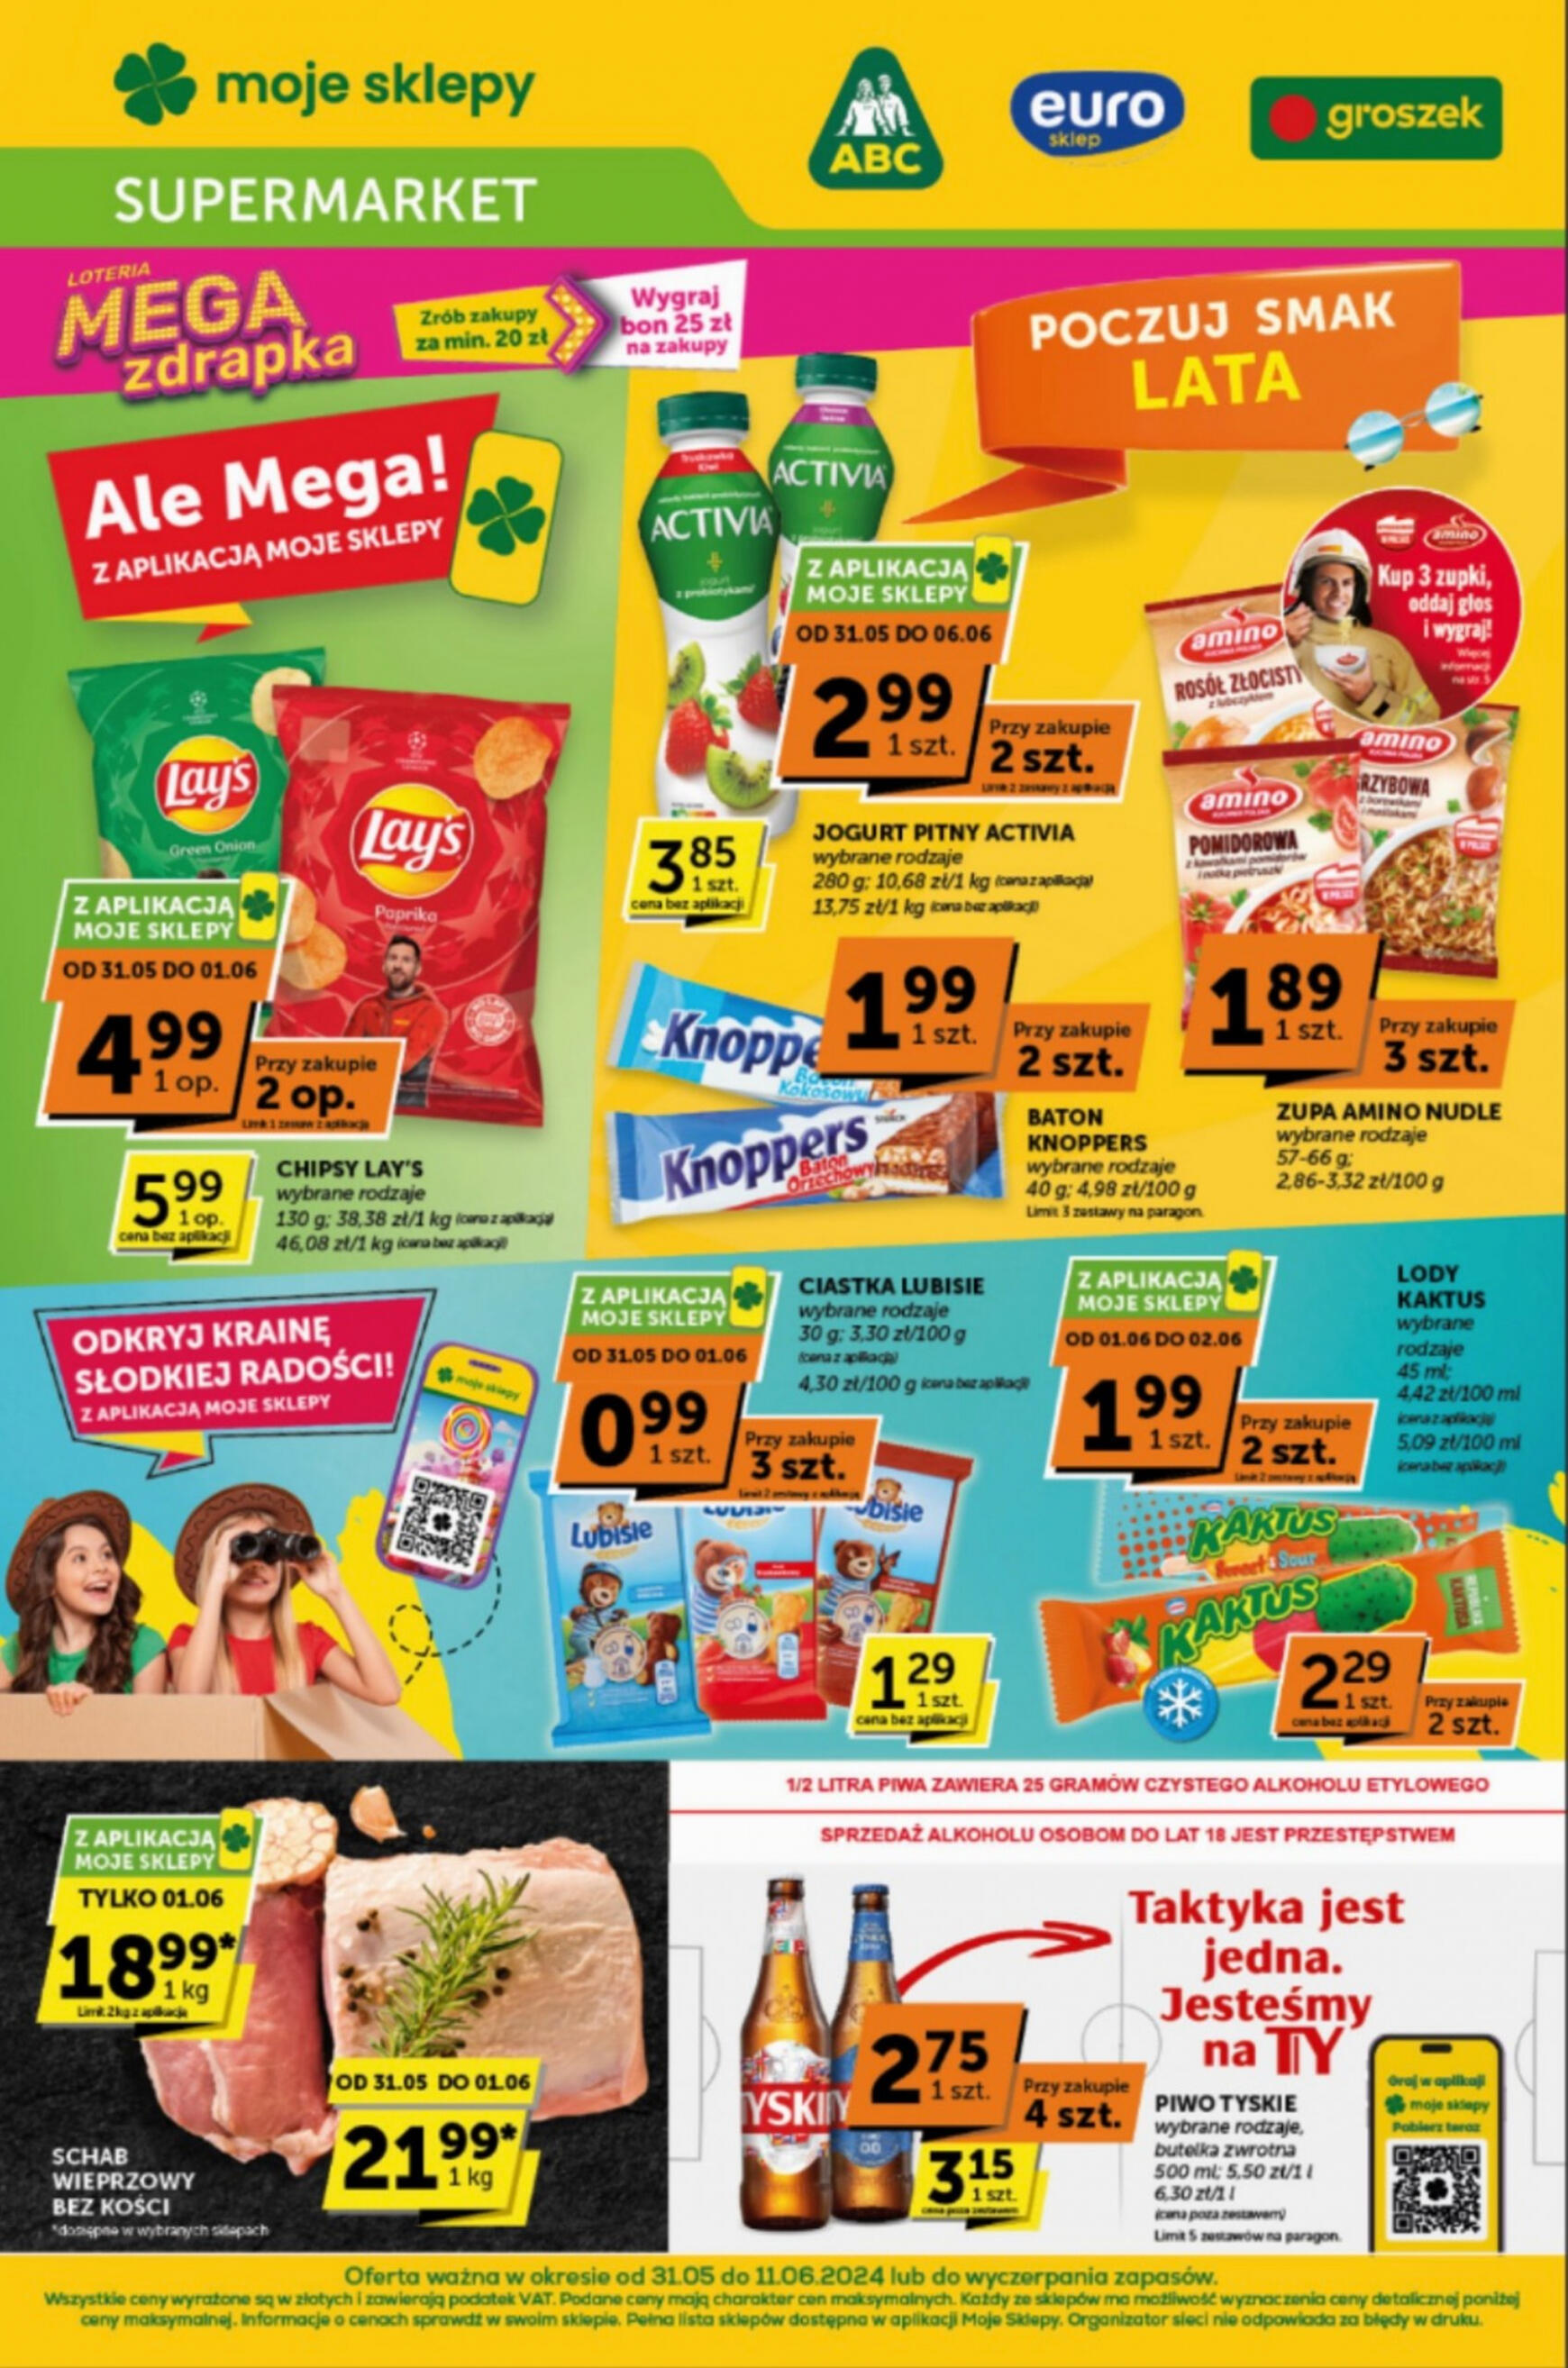 groszek - Groszek - Supermarket gazetka aktualna ważna od 31.05. - 11.06.